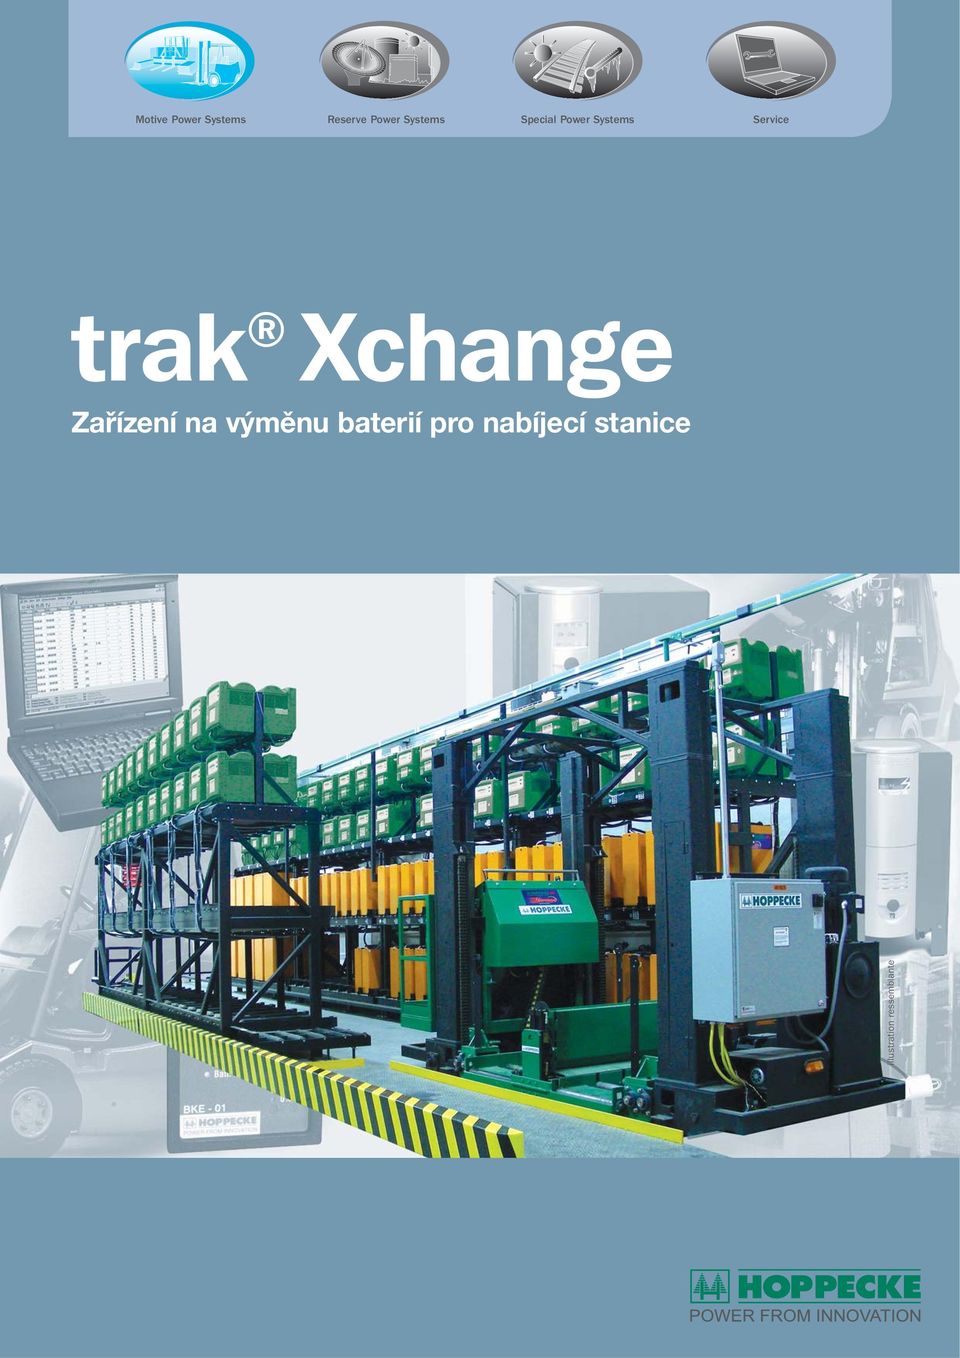 trak Xchange Zařízení na výměnu baterií